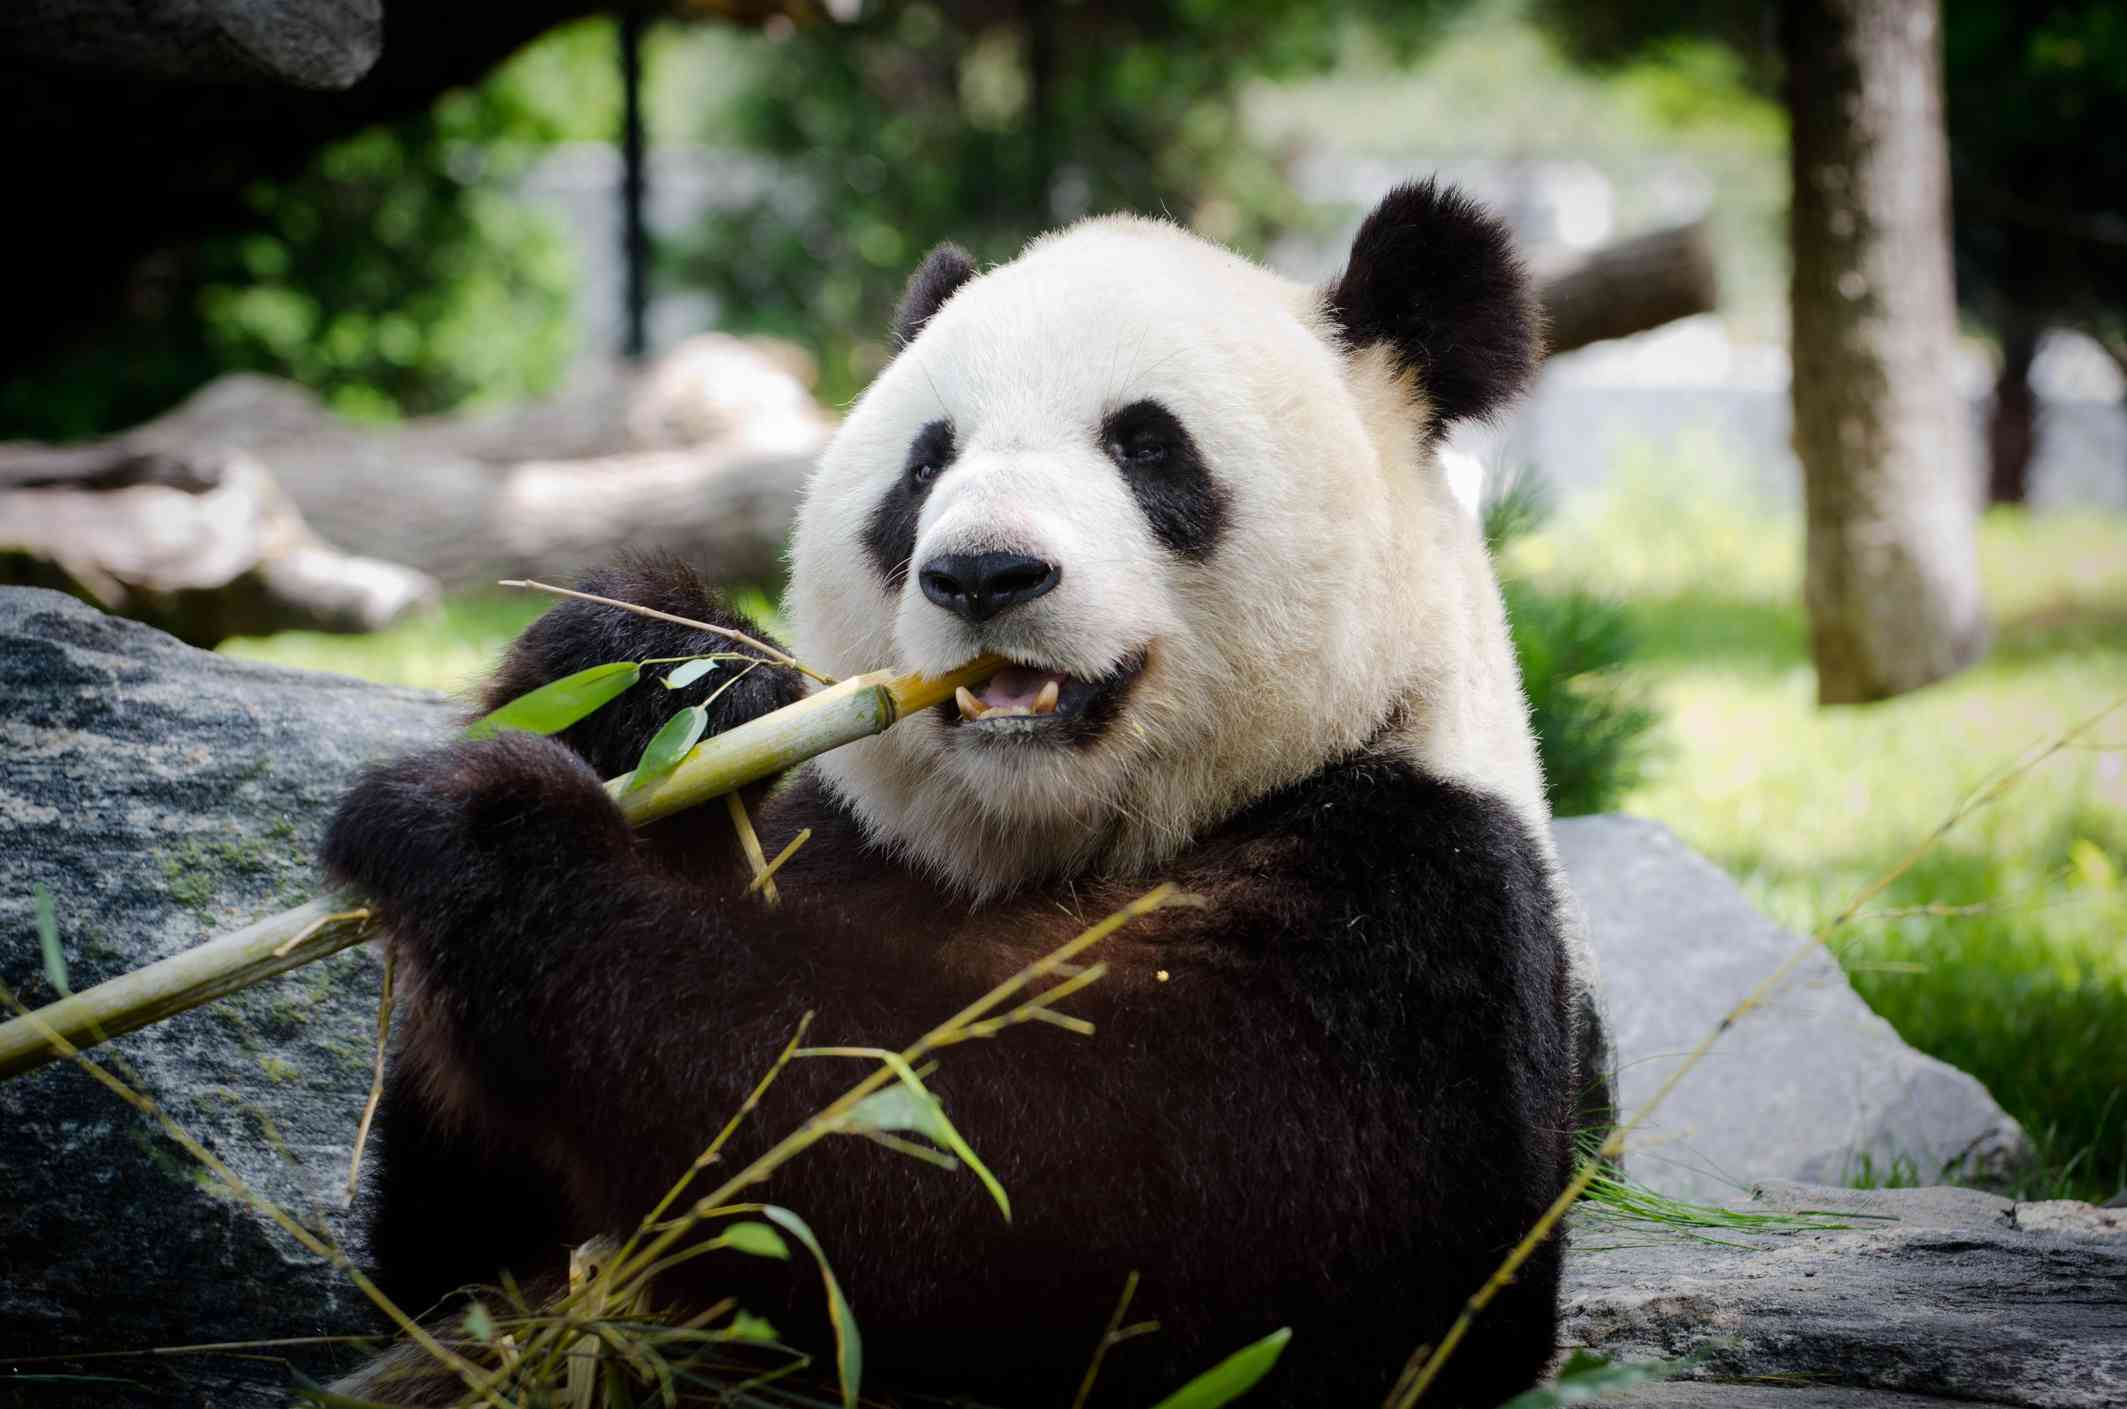 el panda gigante come bambú